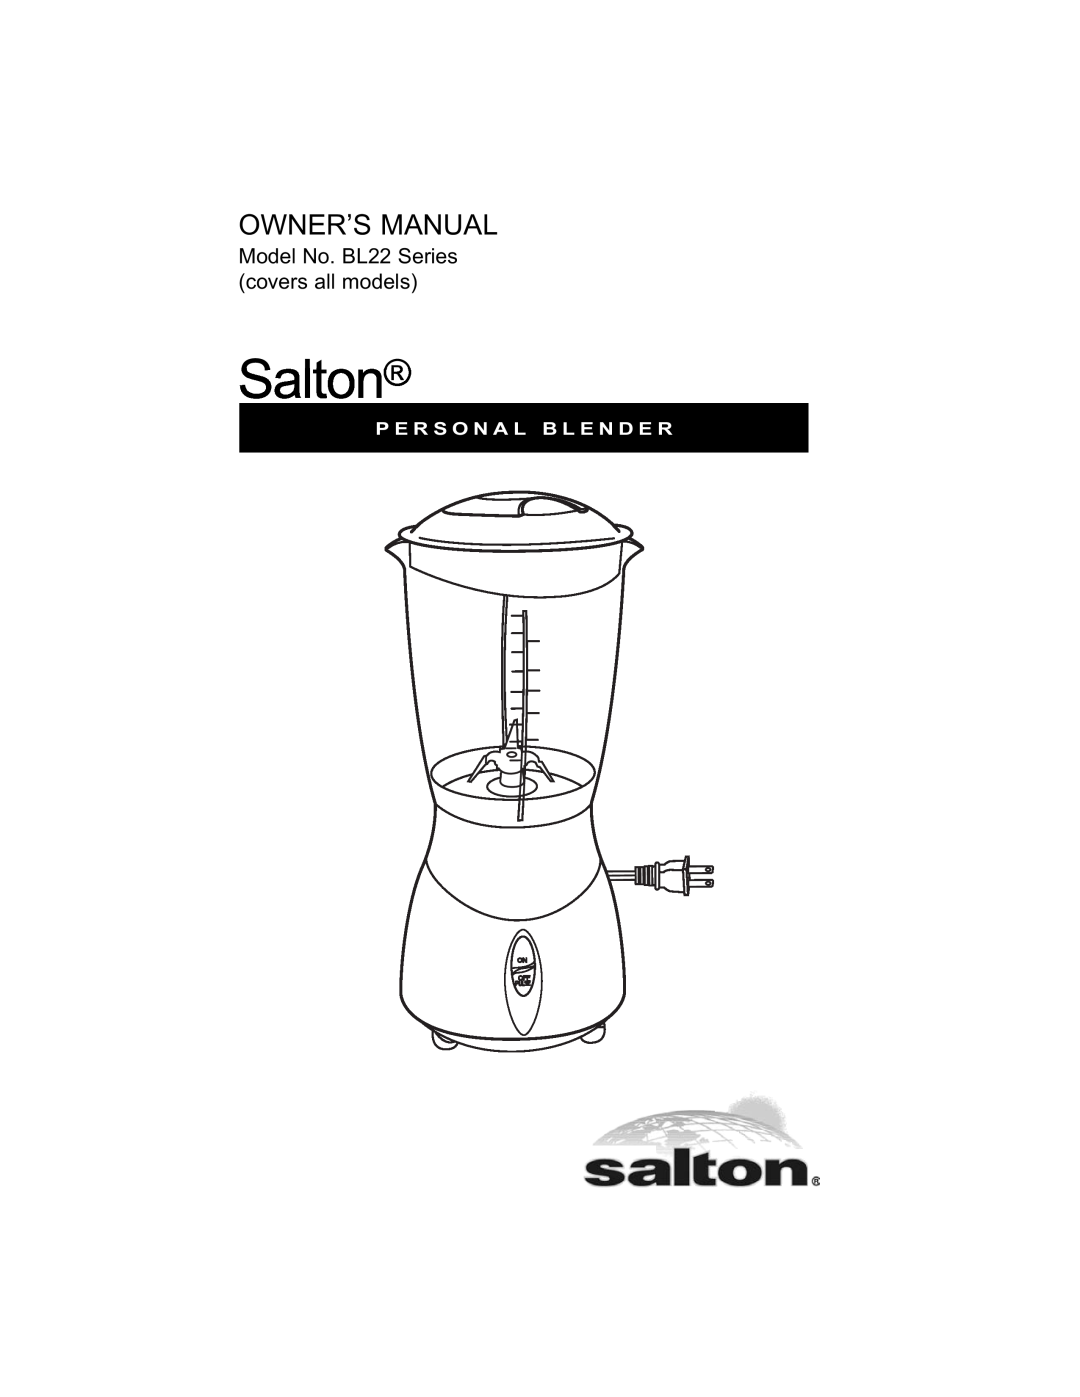 Salton owner manual Salton, Model No. BL22 Series covers all models, P E R S O N A L B L E N D E R 